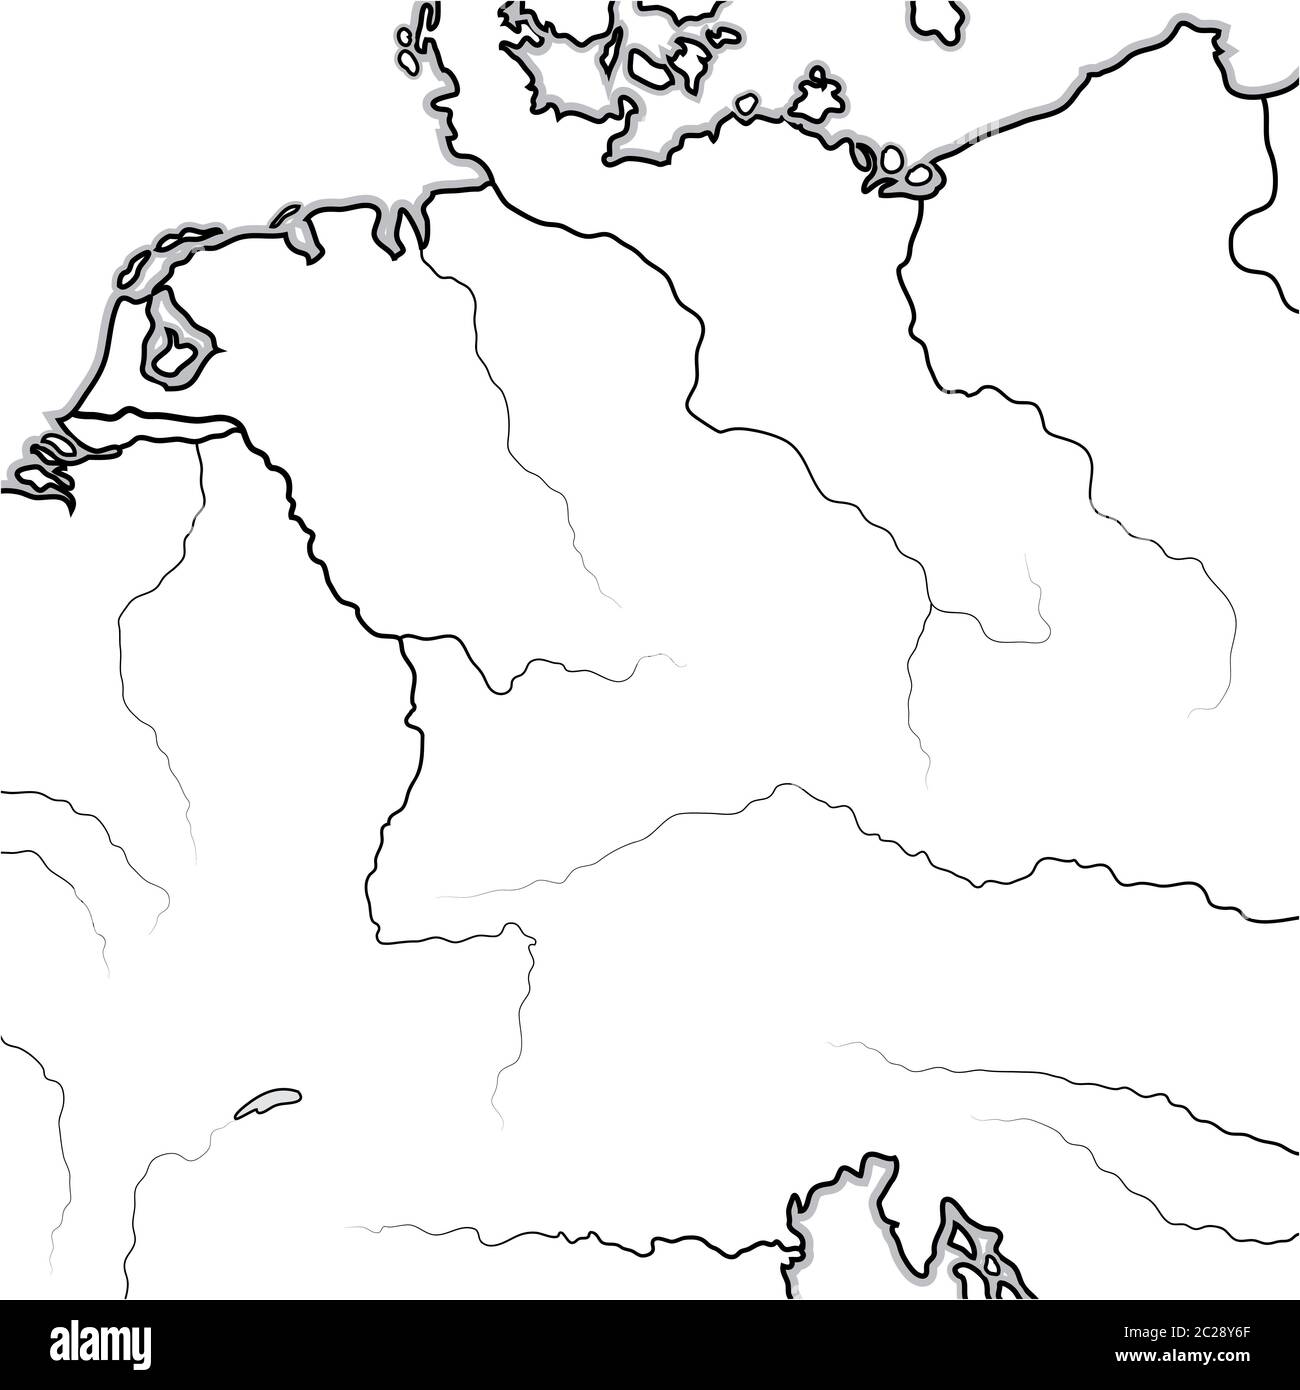 Mapa DE las tierras ALEMANAS: Alemania, Saxonia, Baviera, Teutonia, Prusia, Austria. Gráfico geográfico. Foto de stock